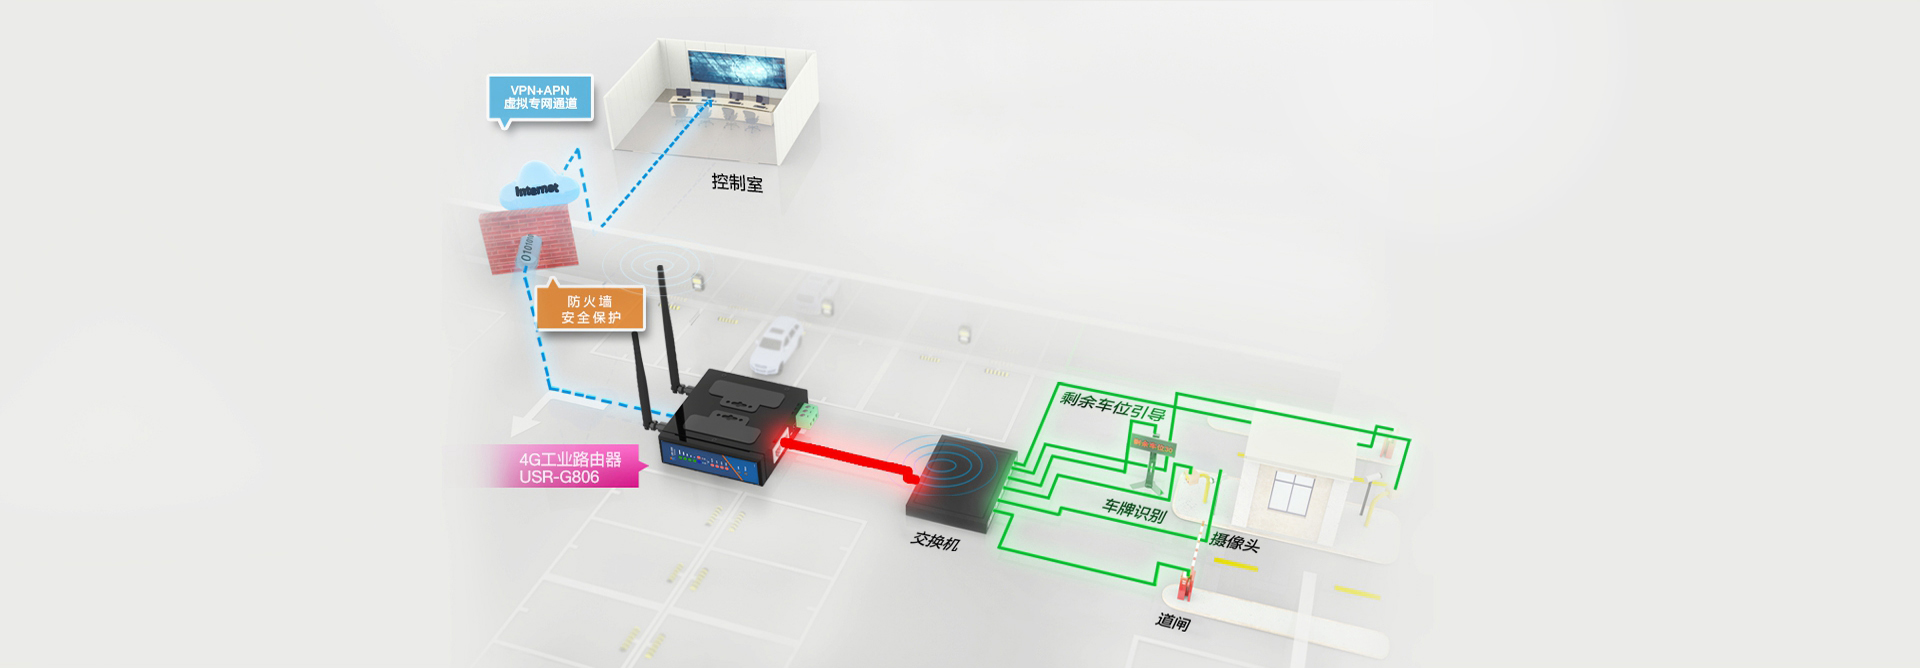 3G/4G工业无线路由器_lte工业级路由器智能停车场传输解决方案